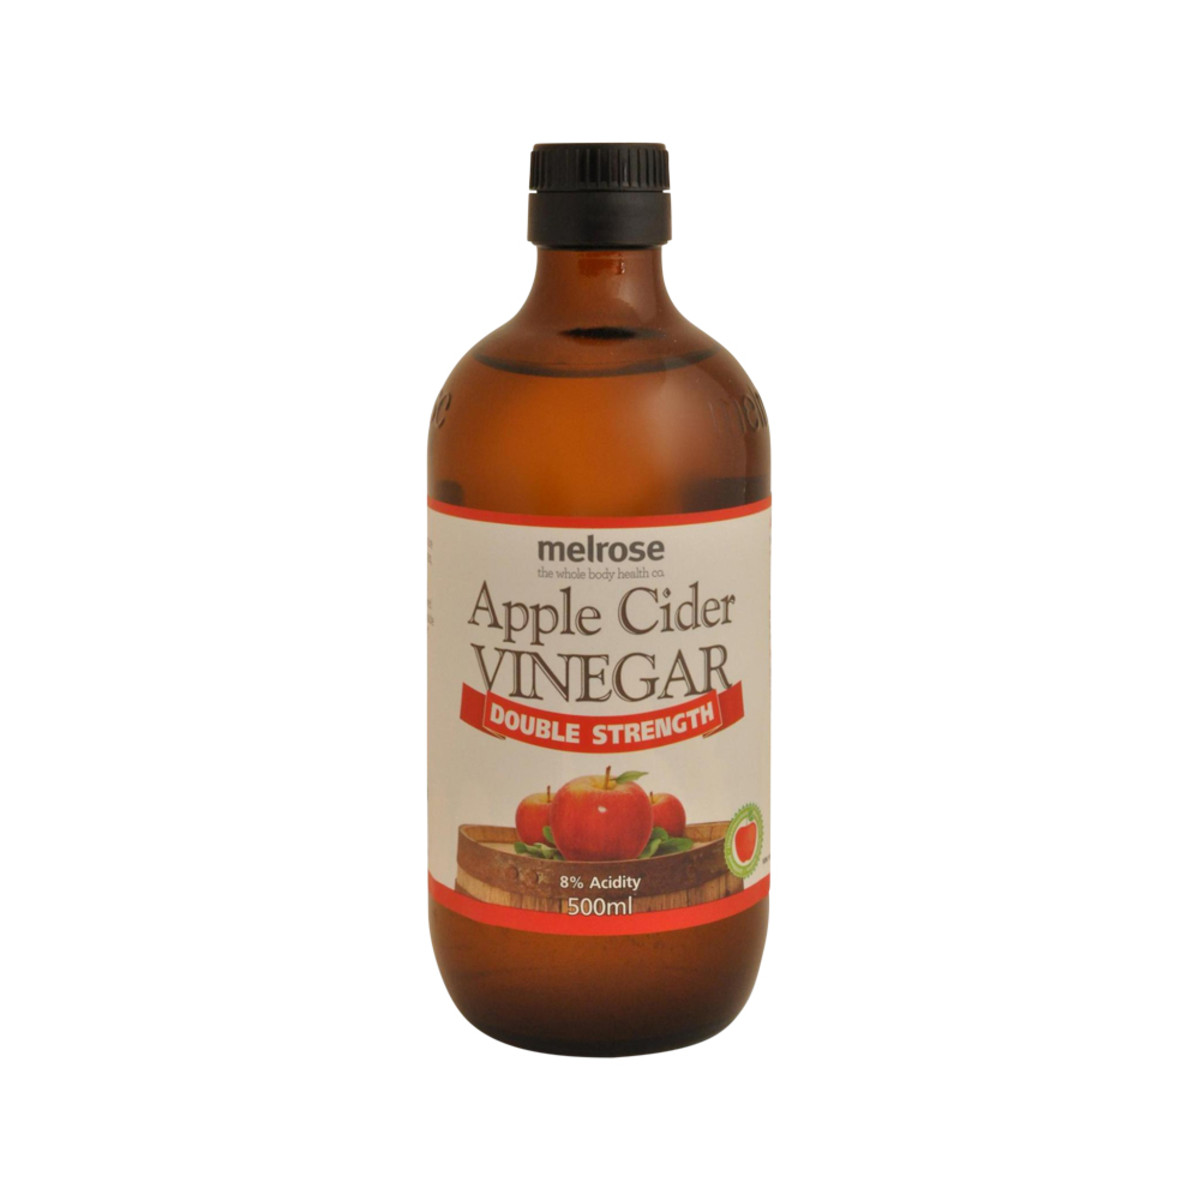 MELROSE - Apple Cider Vinegar Double Strength